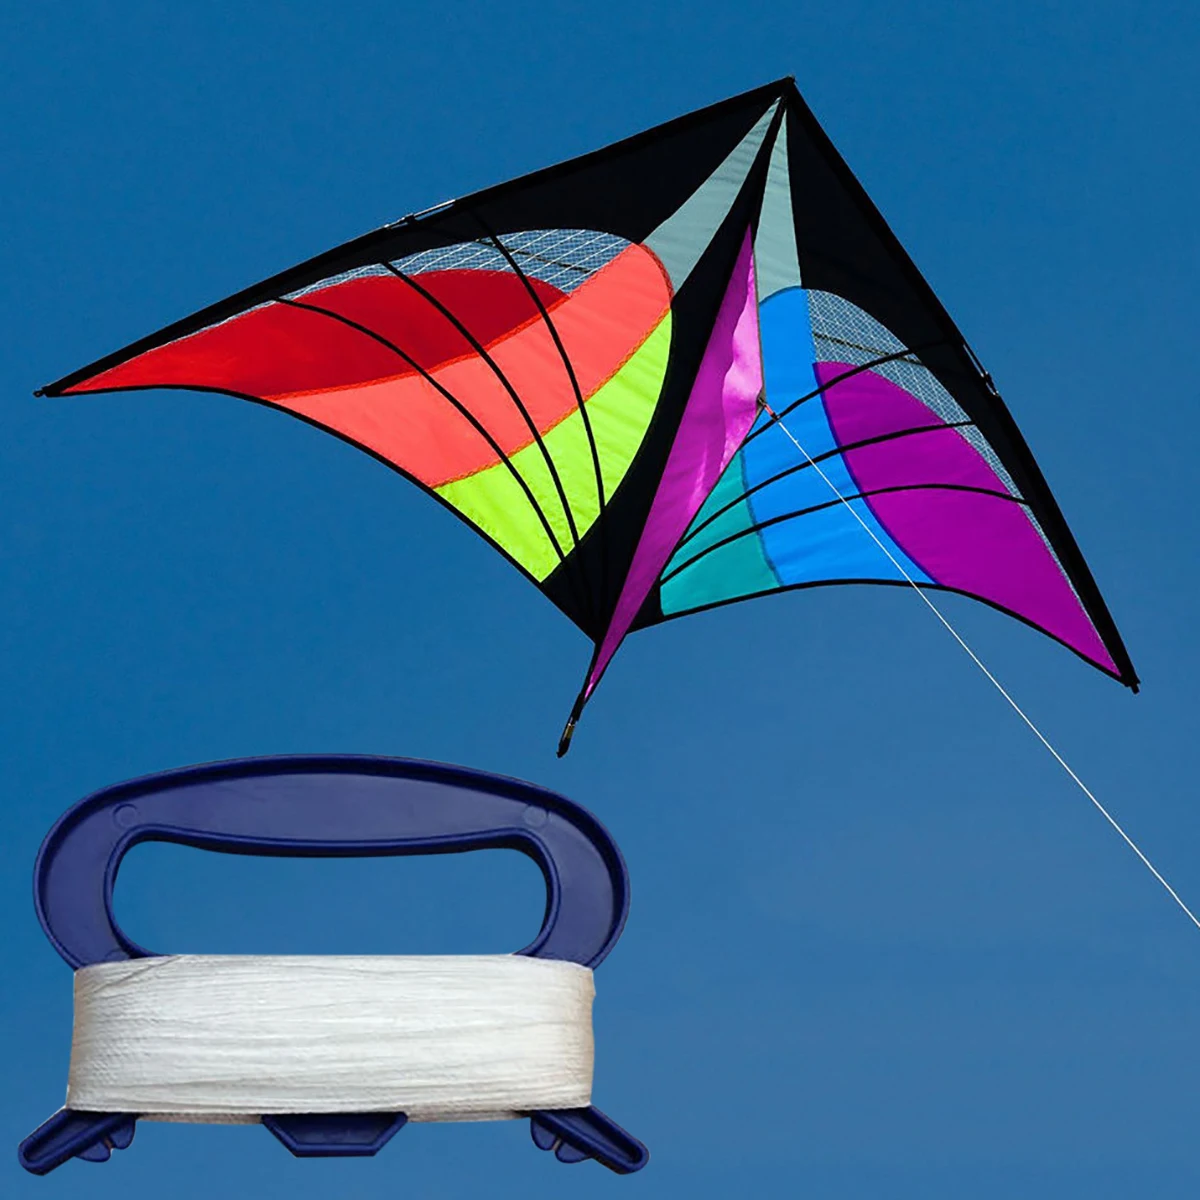 Multicolor Outdoor Sports Fun Toys Single Line Delta Triangle Kite